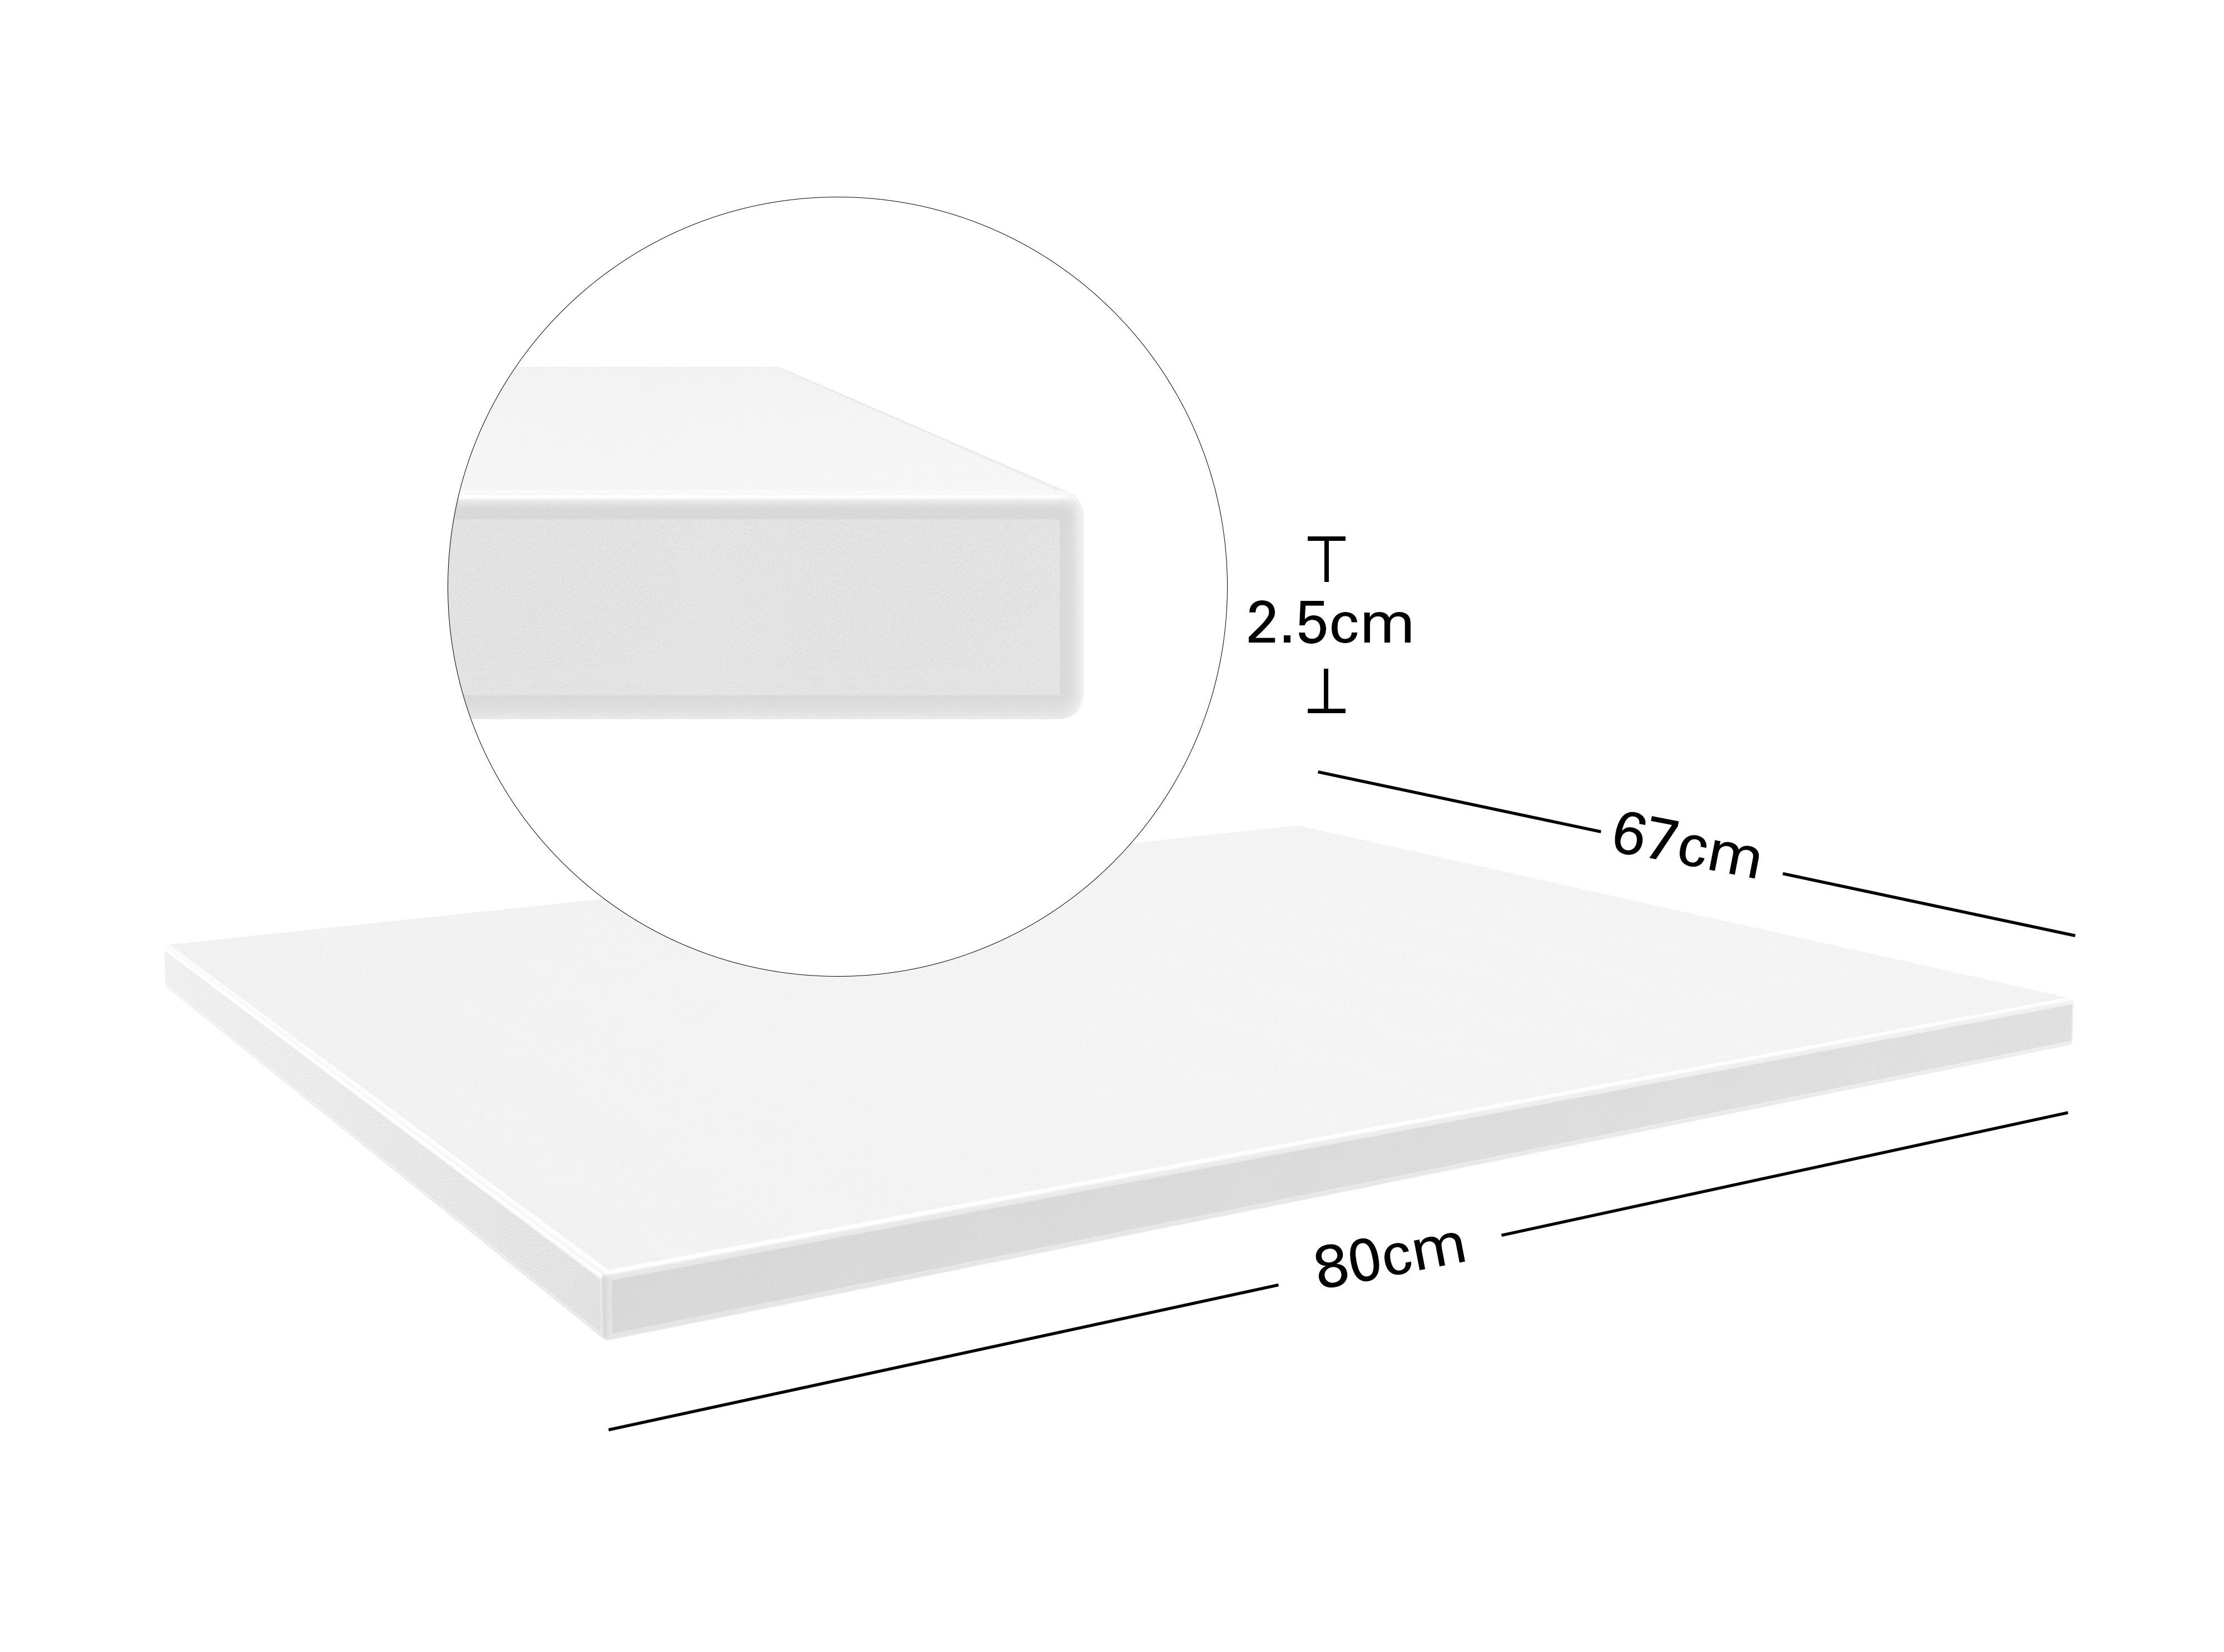 Actiforce Schreibtischplatte 160 x 80 cm / 138 x 67 cm / 80 x 67 cm (Hochwertige Melaminbeschichtete Spanplatte für Schreibtisch, Schreibtischplatte ohne Bohrungen), 25mm starke Arbeitsplatte Weiß